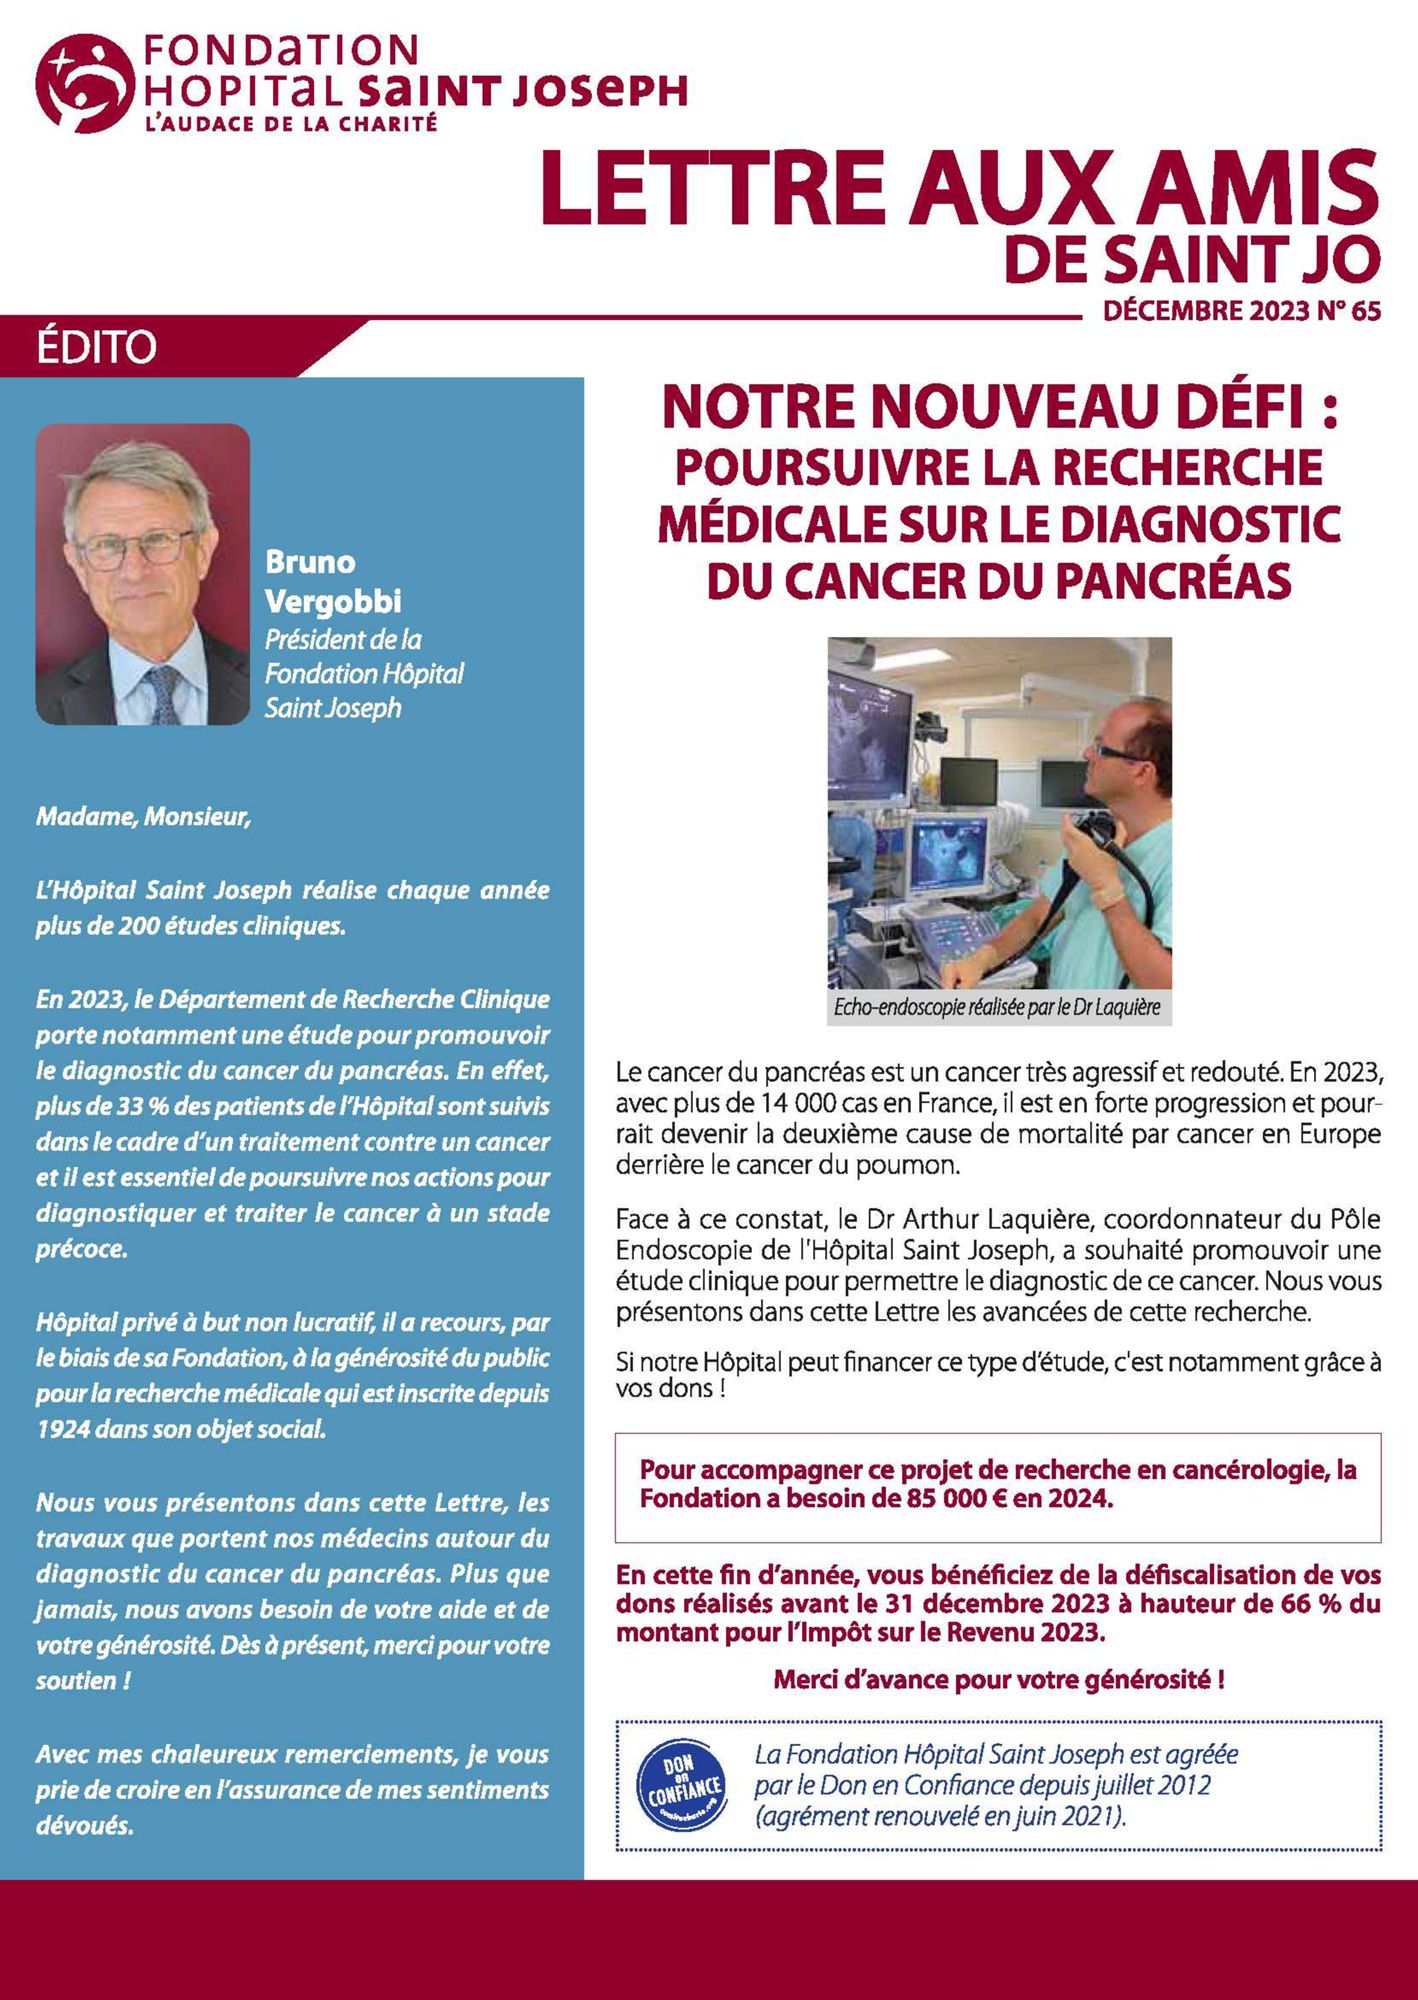 Lettre aux amis n°65 : Poursuivre la Recherche Médicale sur le diagnostic du cancer du pancréas